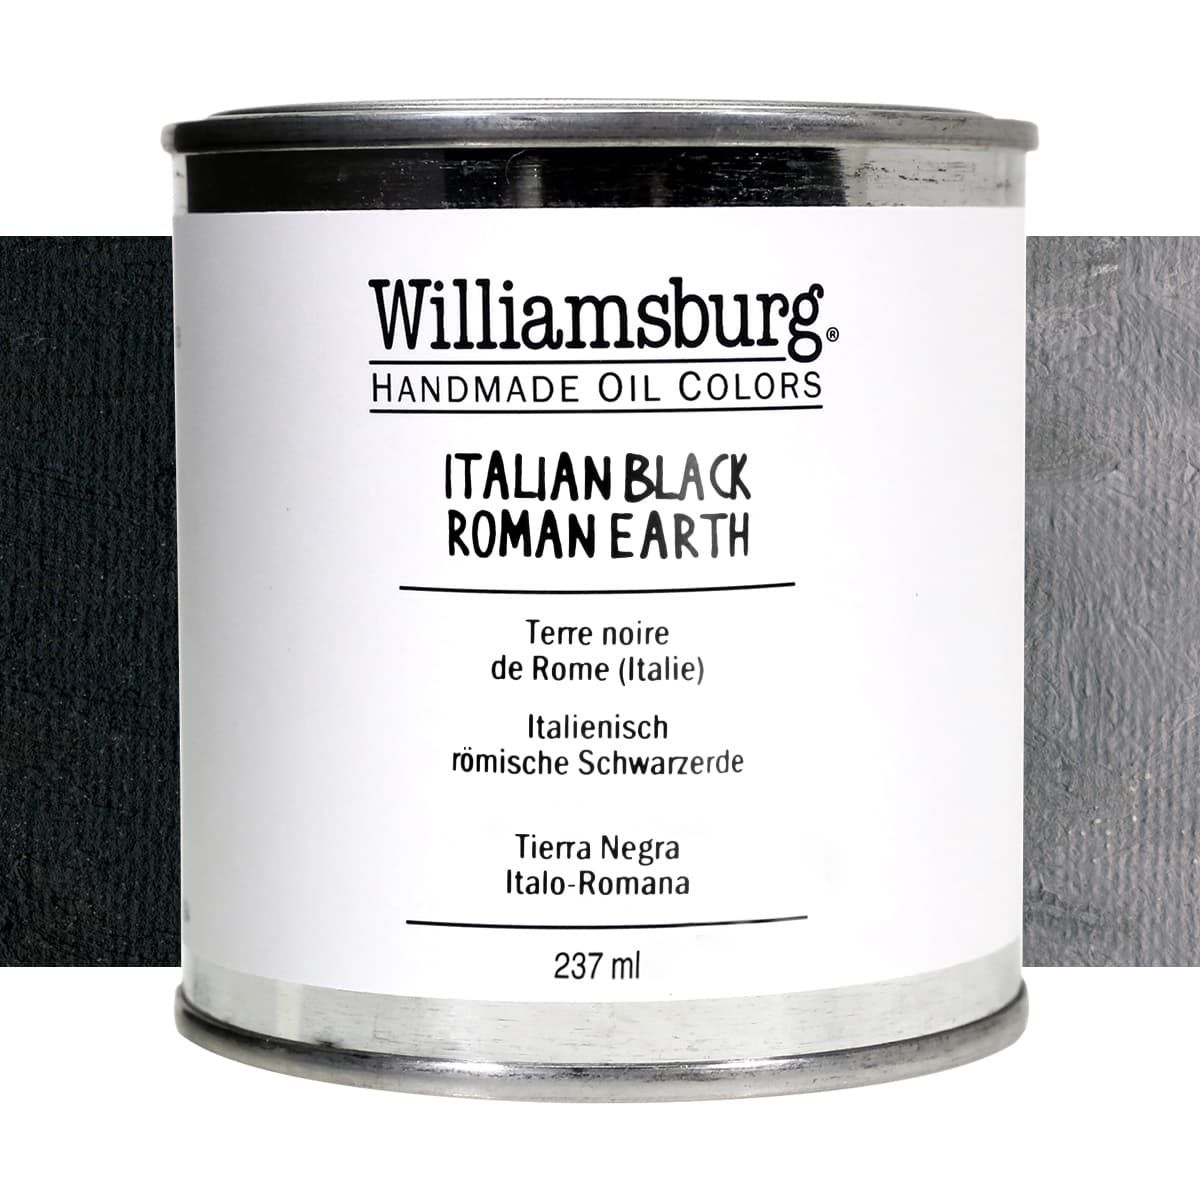 Williamsburg Oil Color 237 ml Can Italian Black Roman Earth